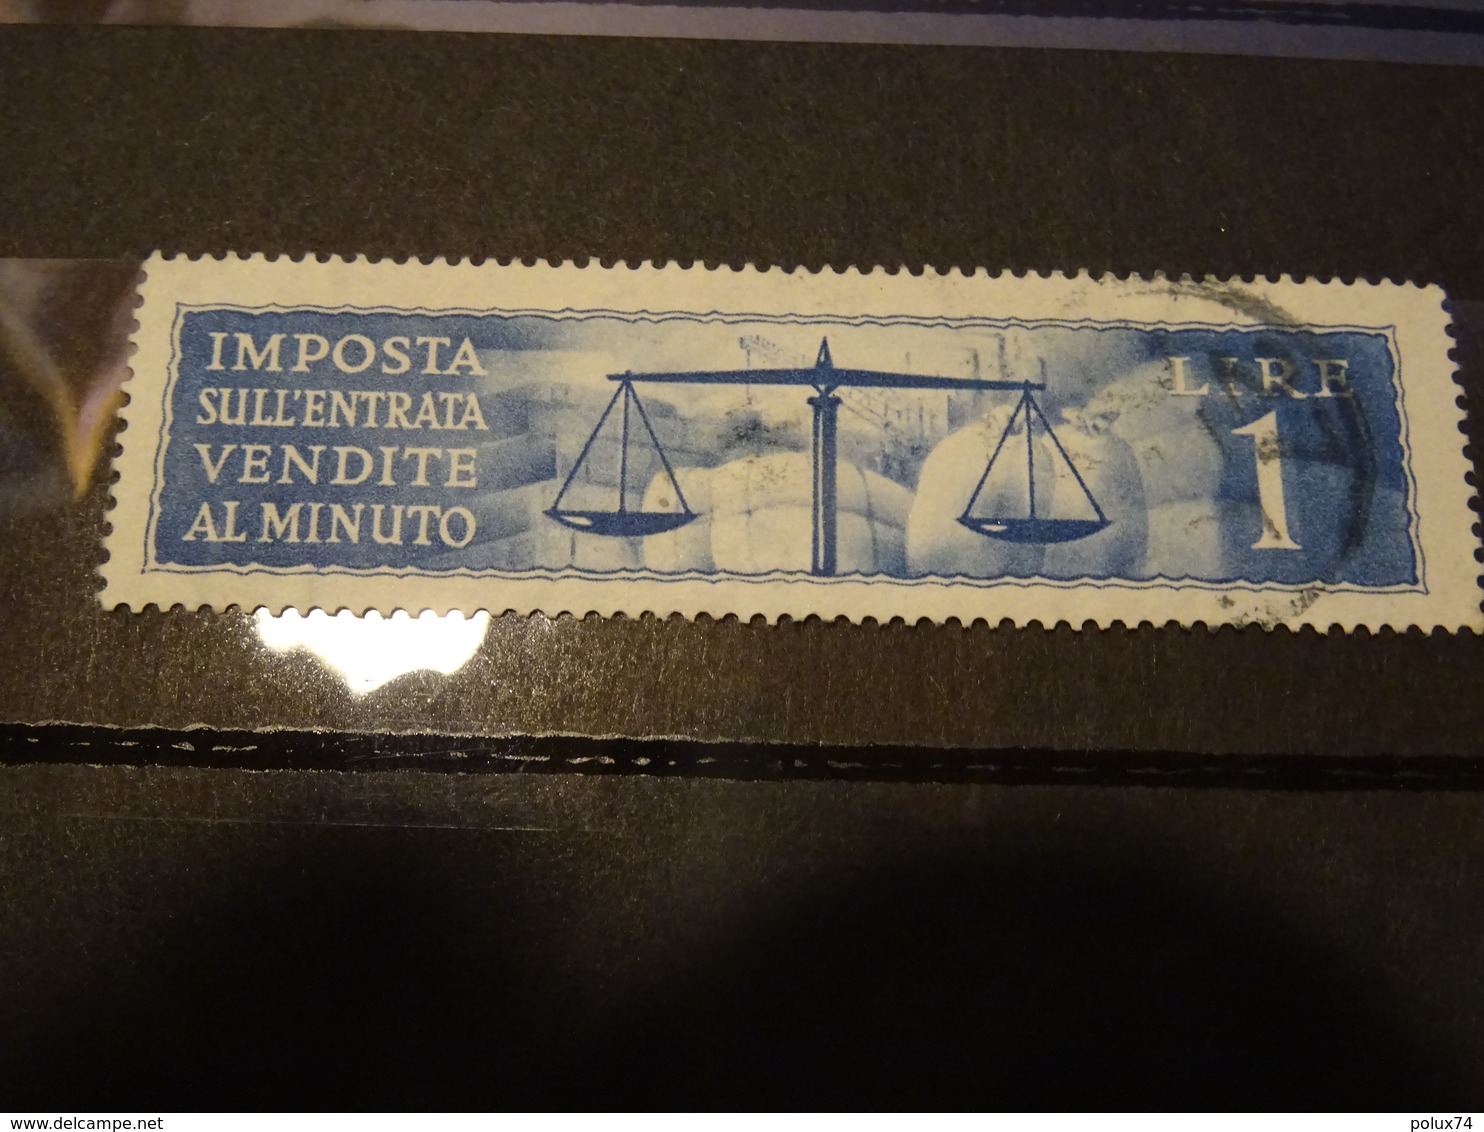 ITALIE IMPOSTA  Fiscal  Marca Da Bollo - Revenue Stamps